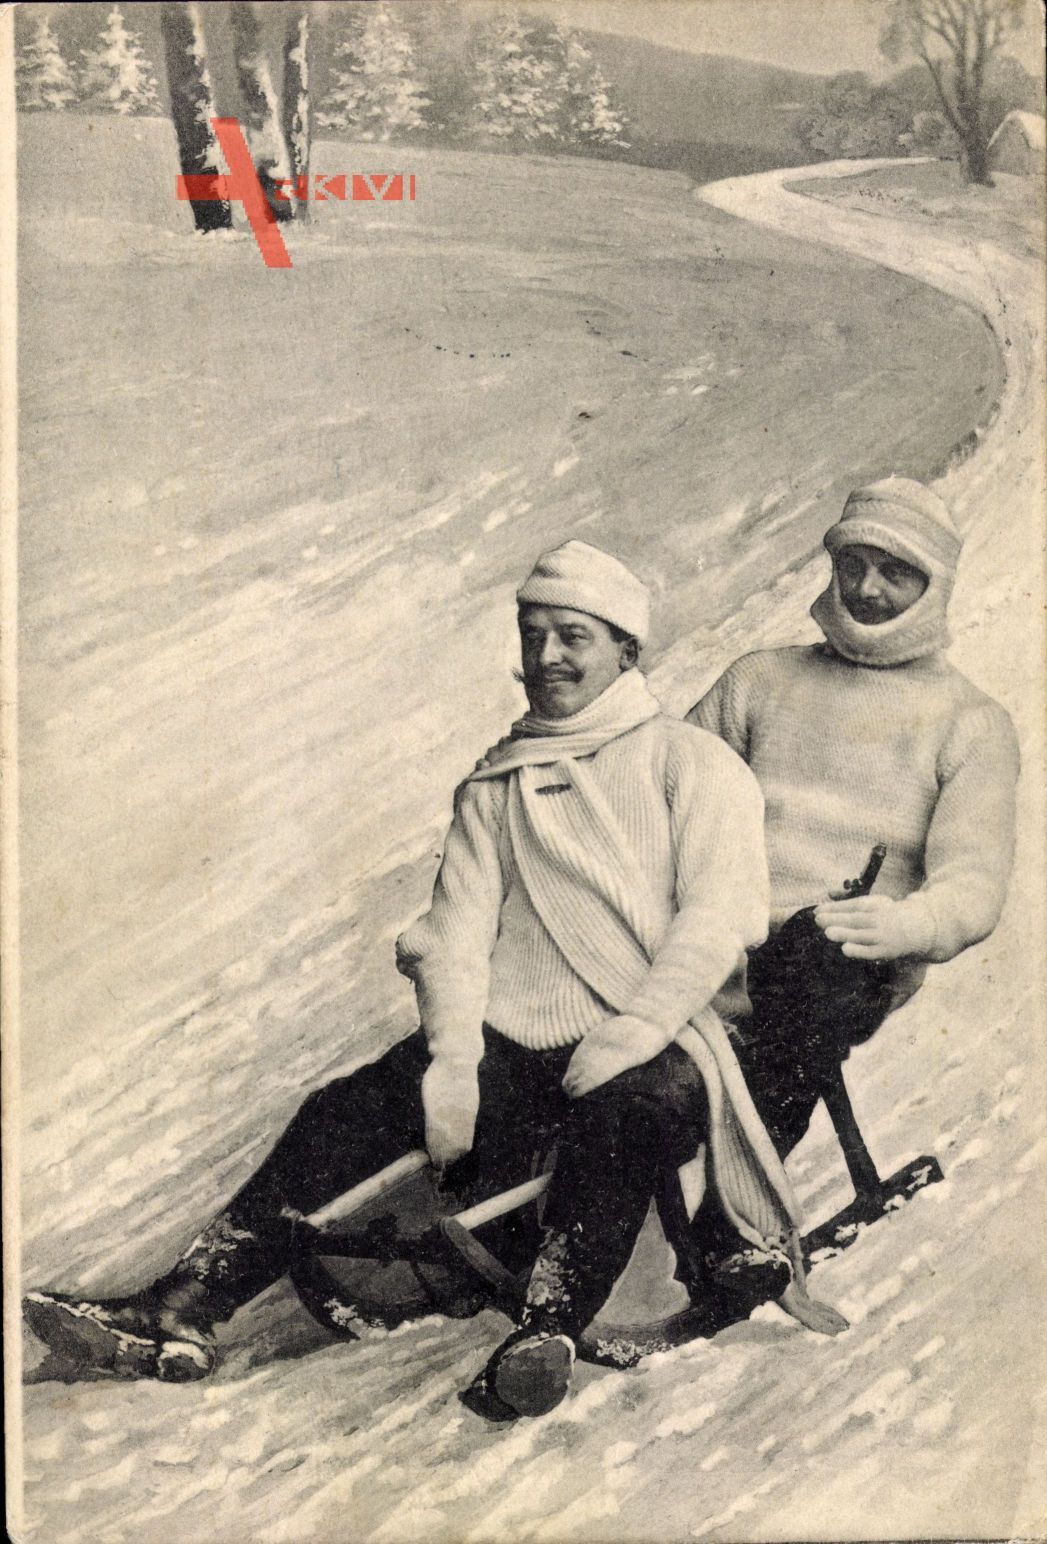 Zwei Männer auf einem Schlitten, Wintersport, Abfahrt